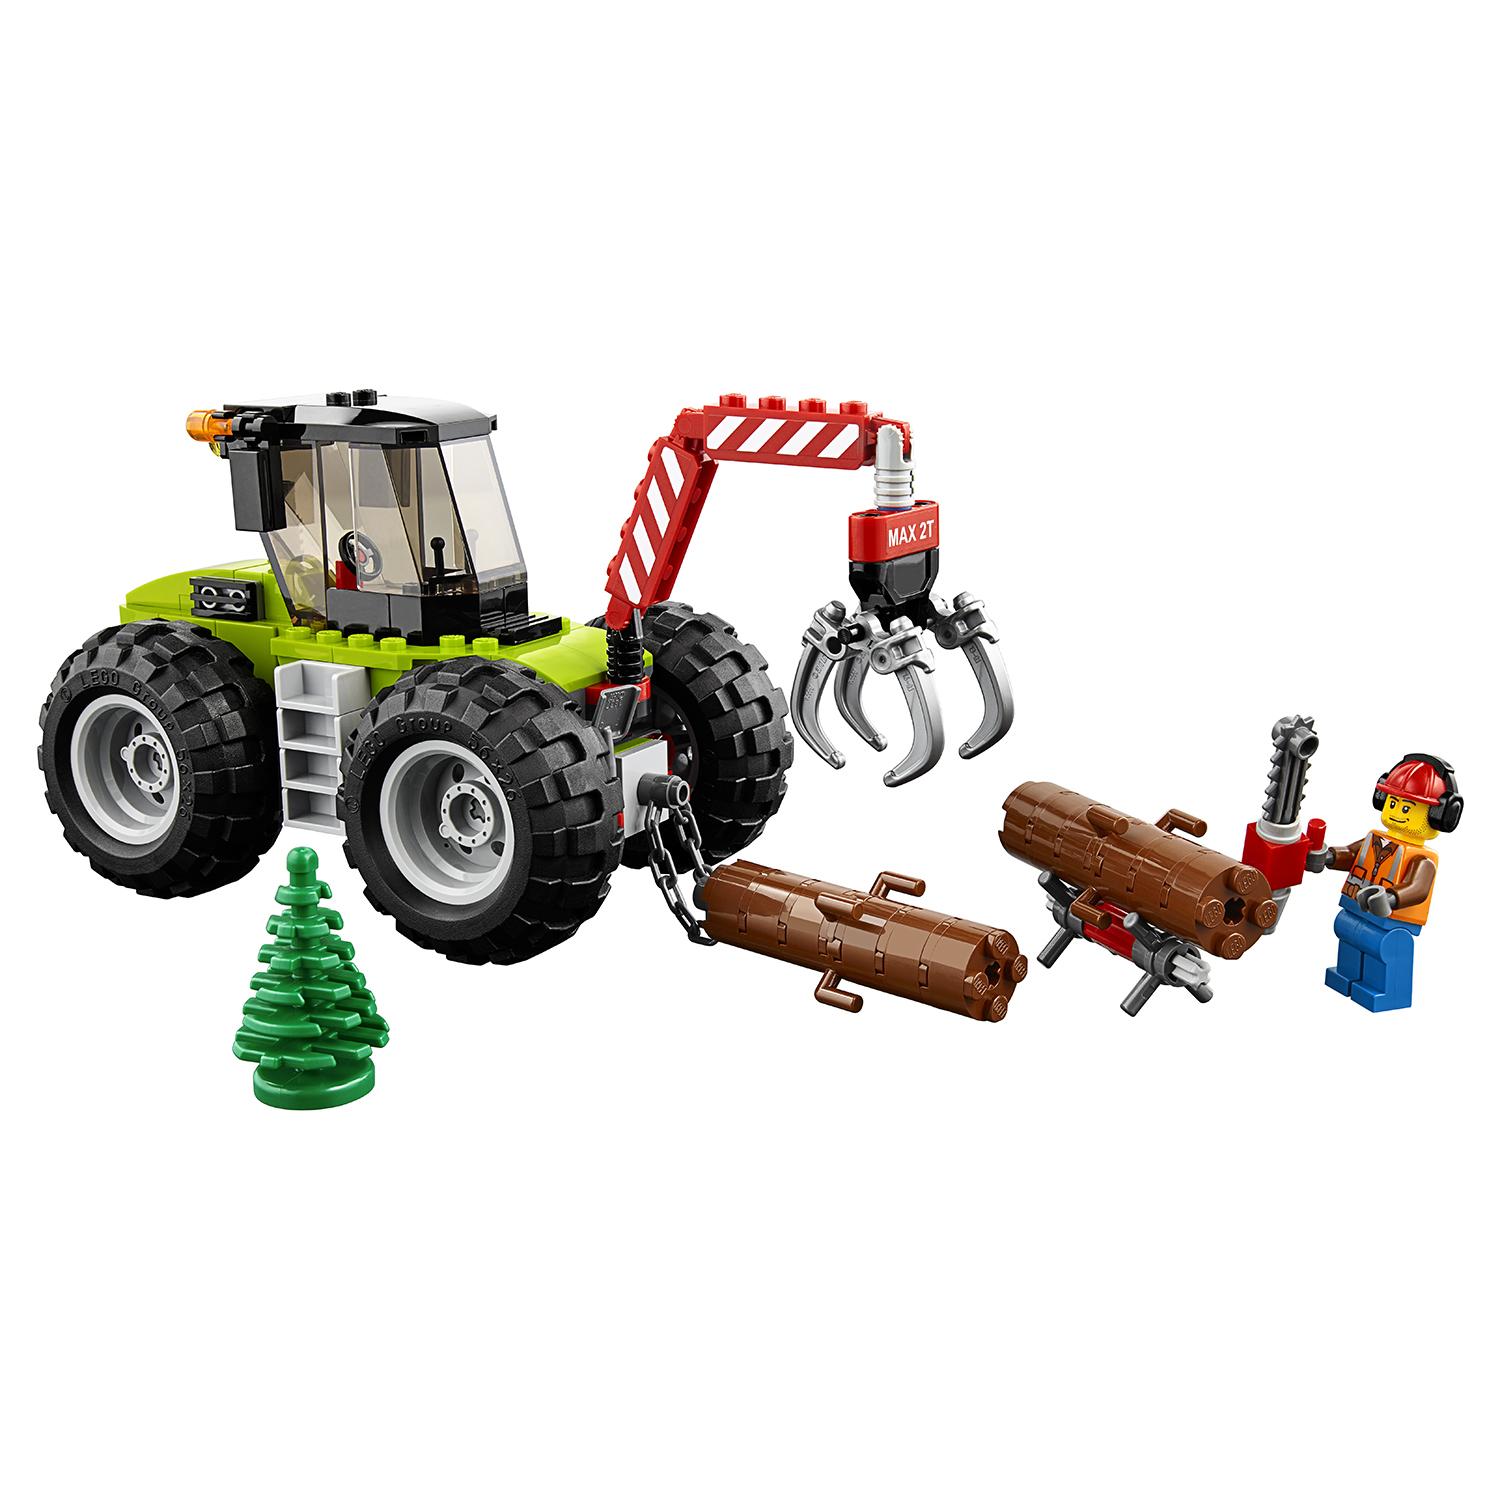 Lego City 60181 Лесной трактор